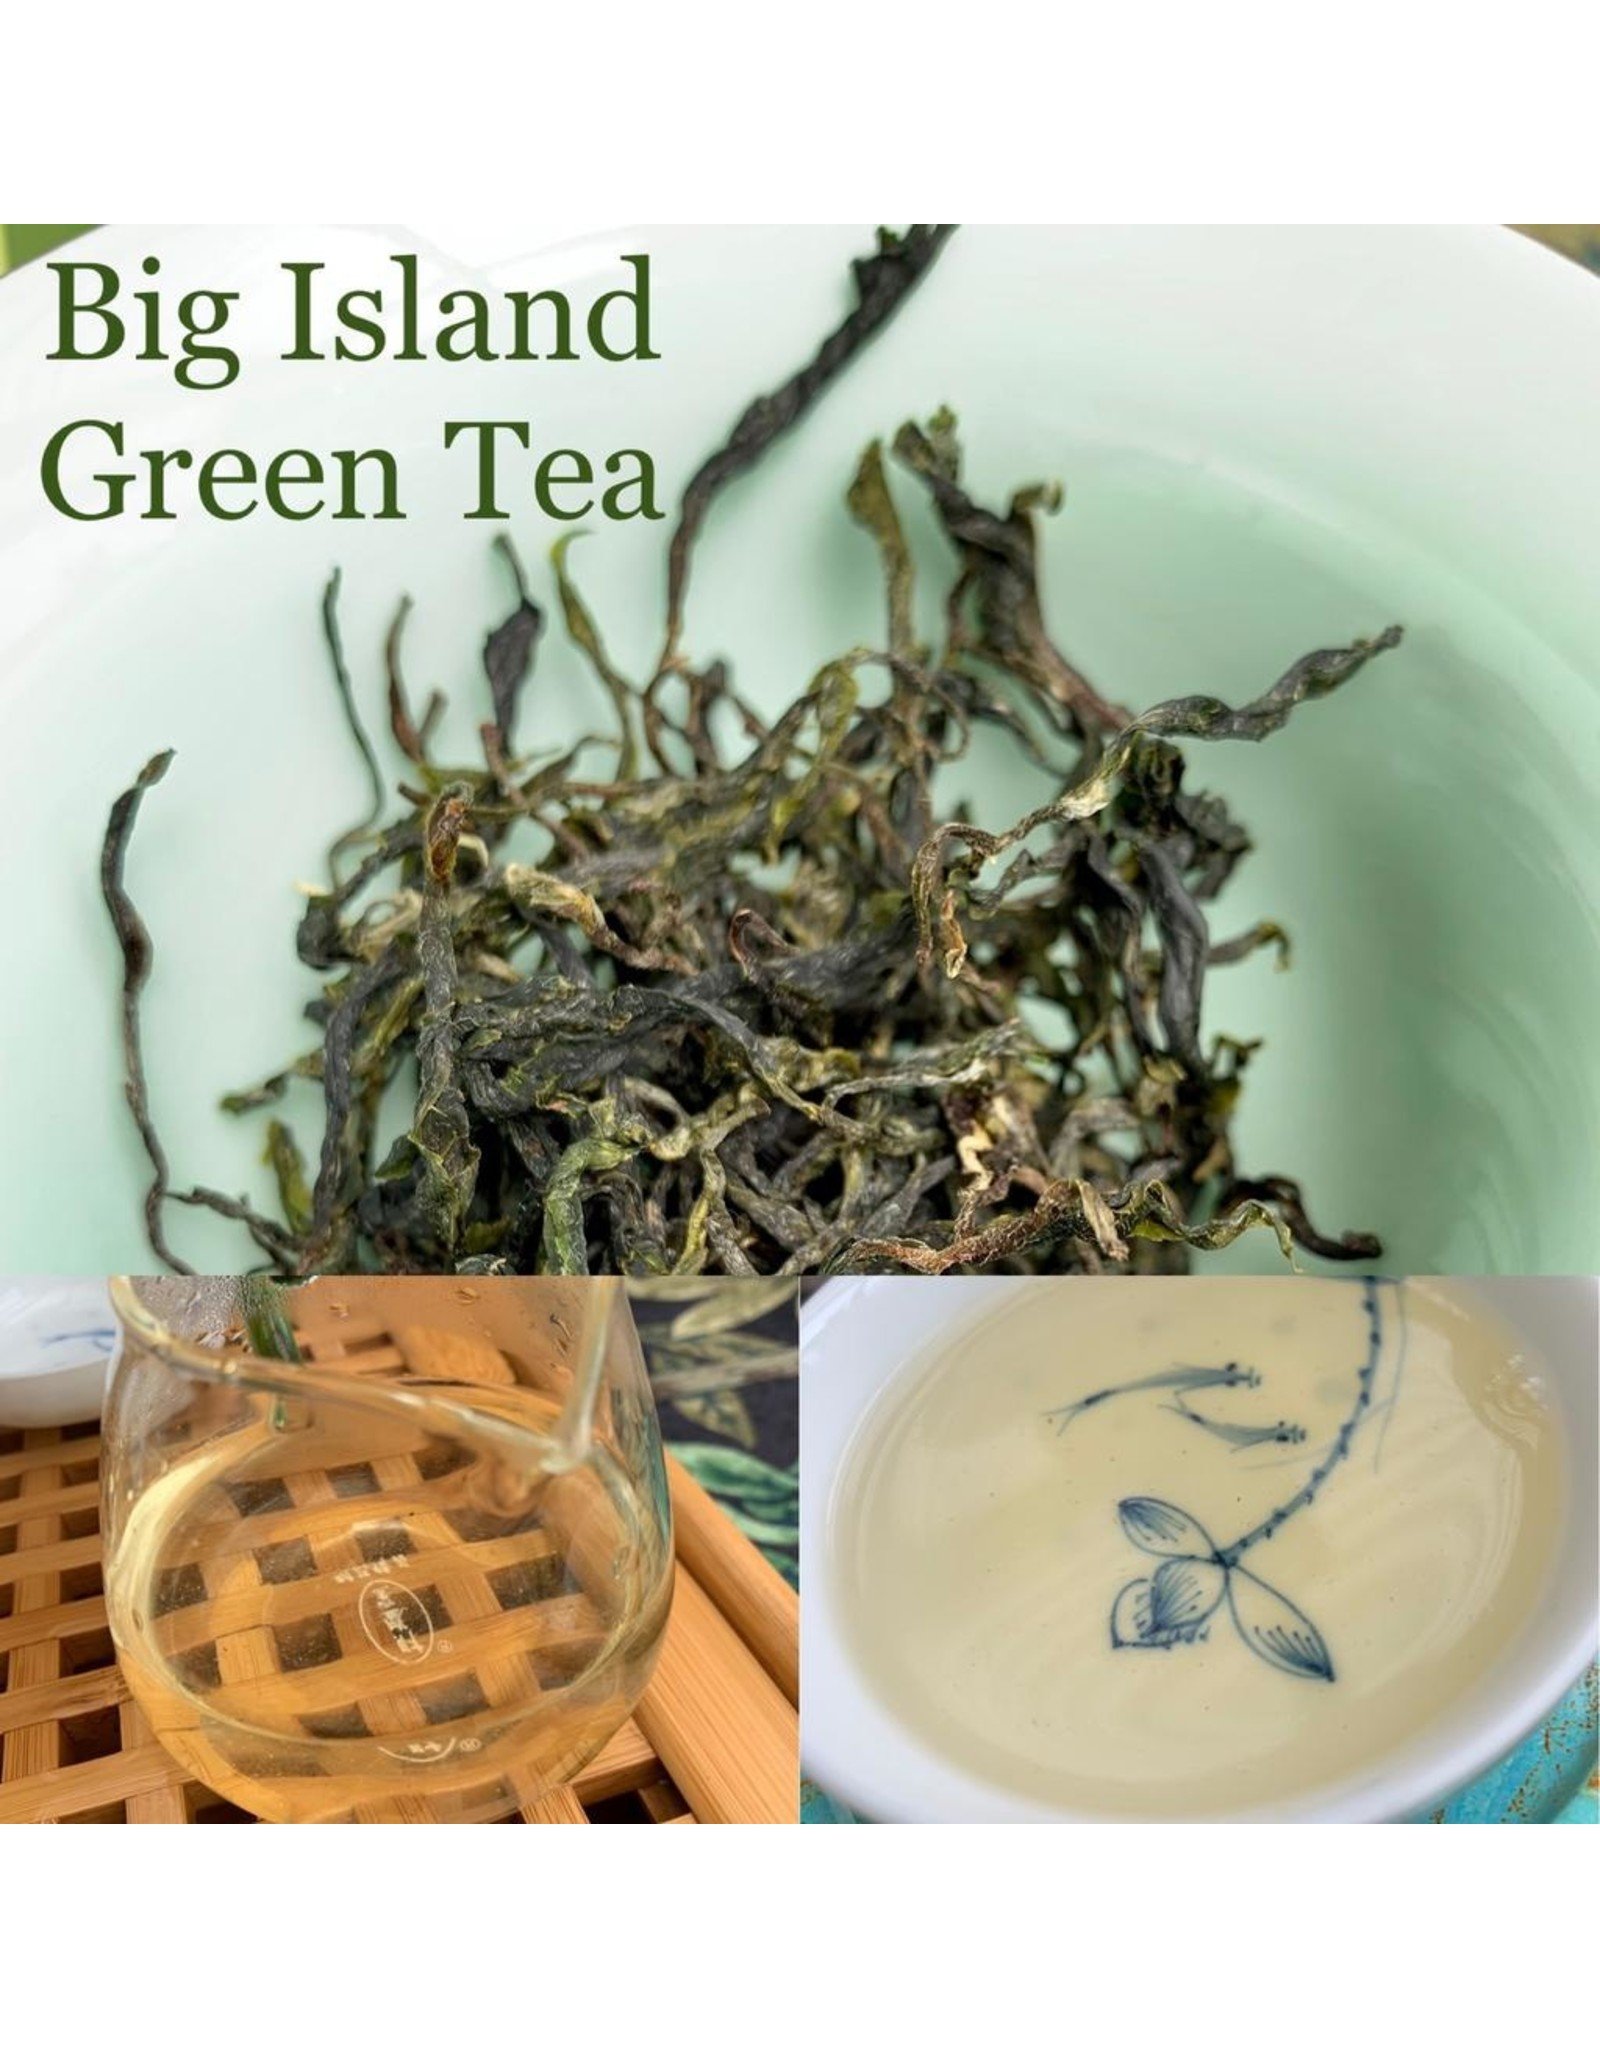 Tea from Hawaii Genuine Hawaii Organic Green Tea (BIT)